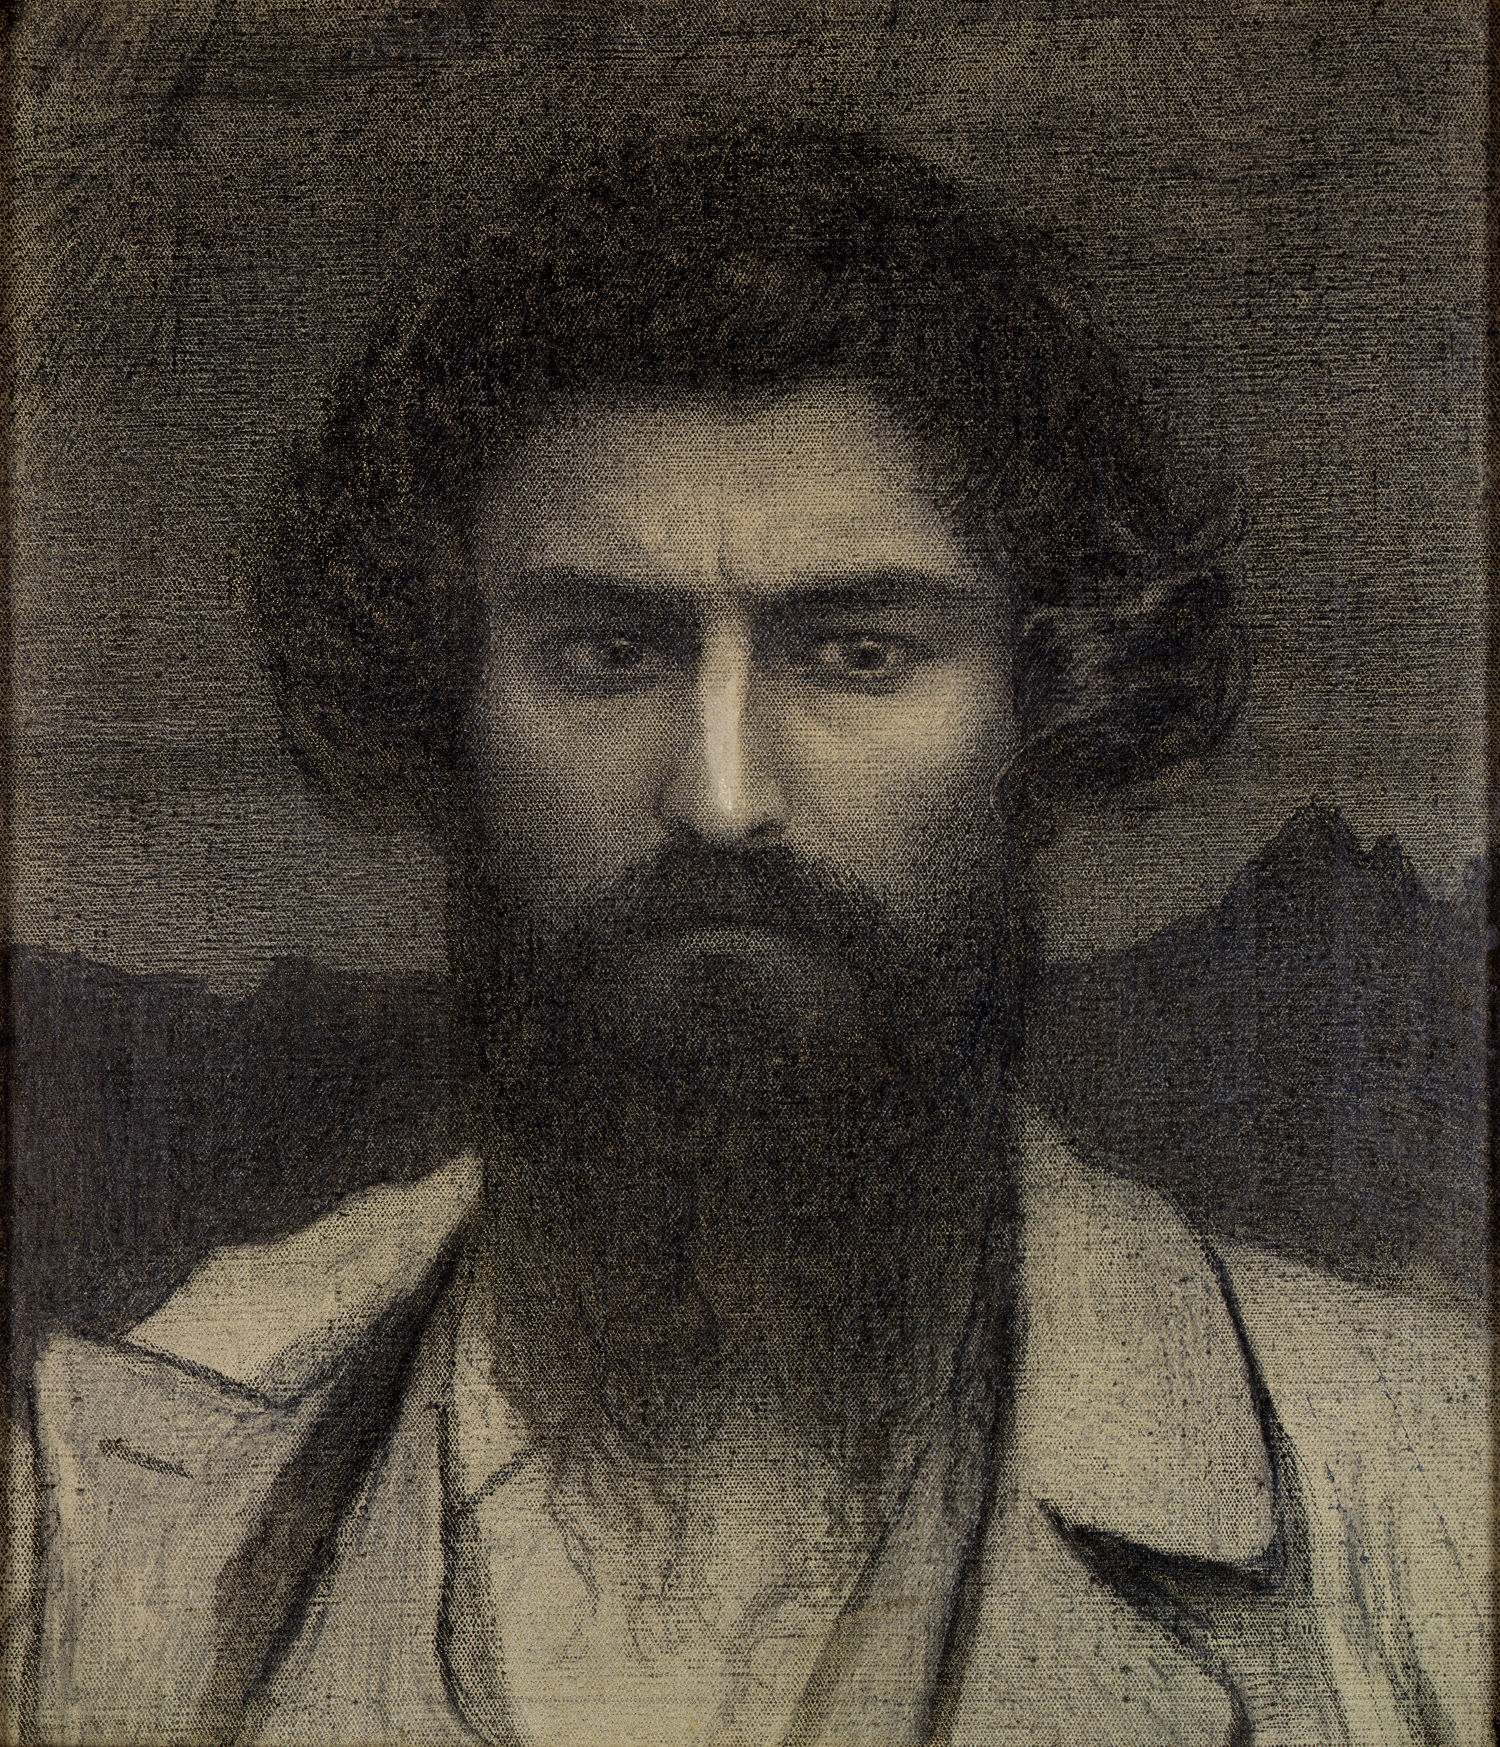 Giovanni Segantini - 15 Ocak, 1858 - 28 Eylül, 1899